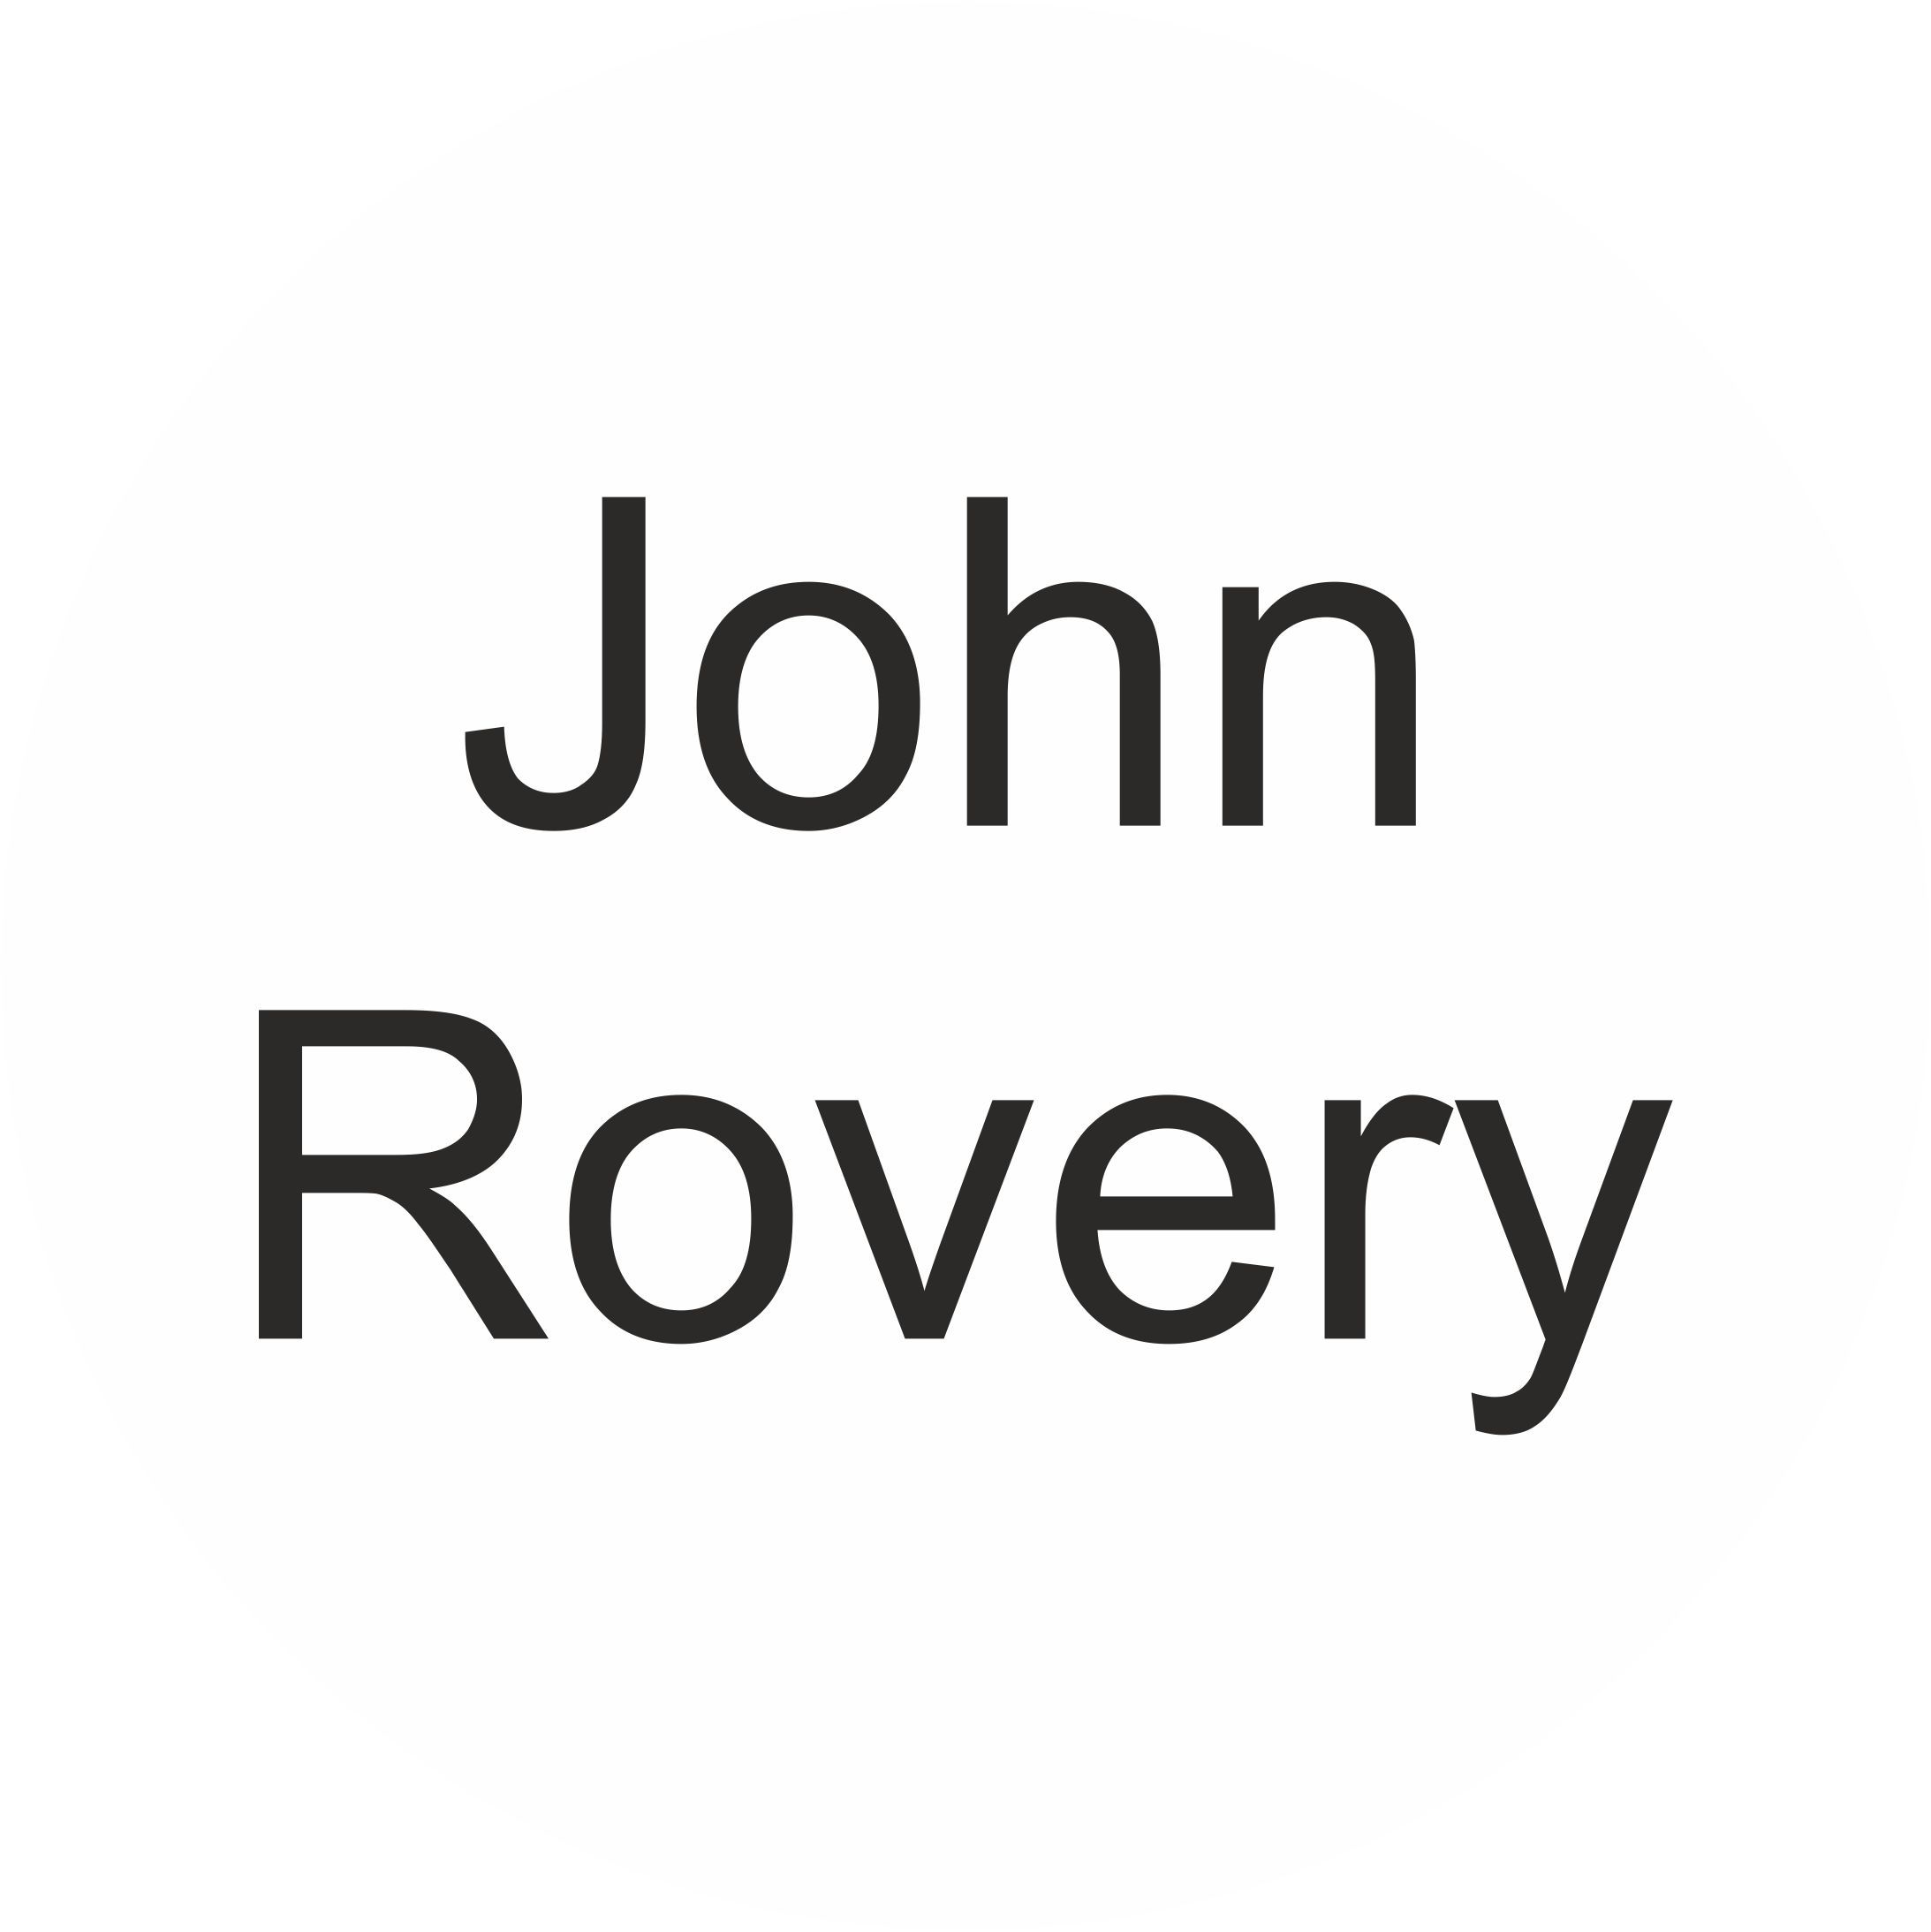 John Rovery